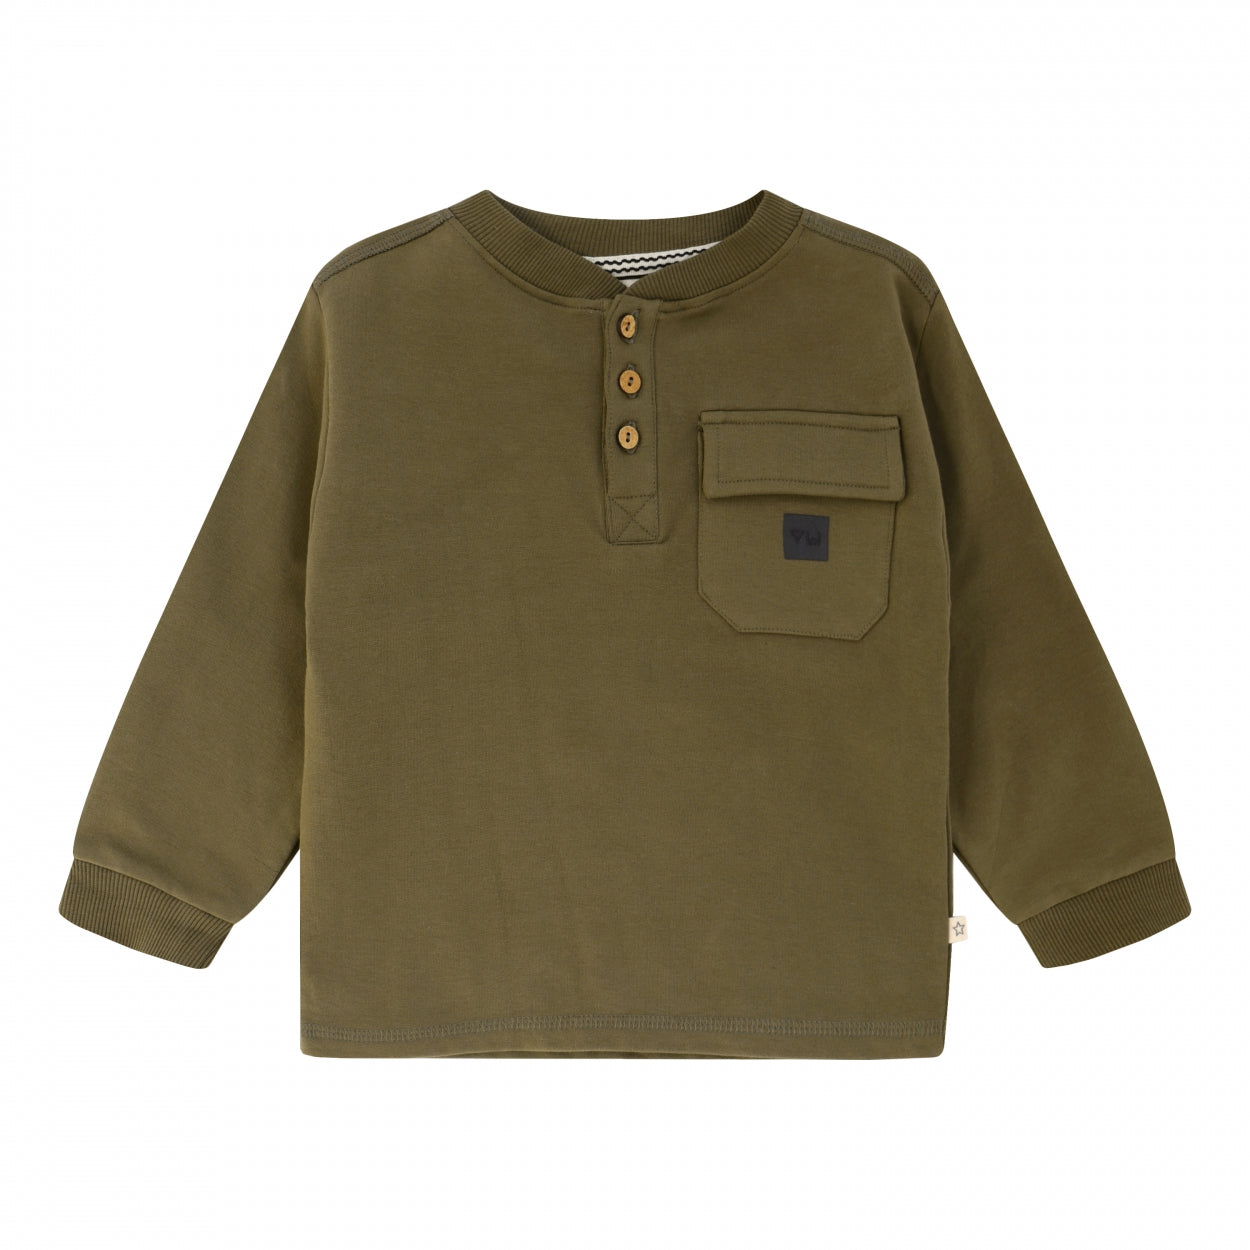 Jongens Sweater Solid | George van Your Wishes in de kleur Dark Olive in maat 92.